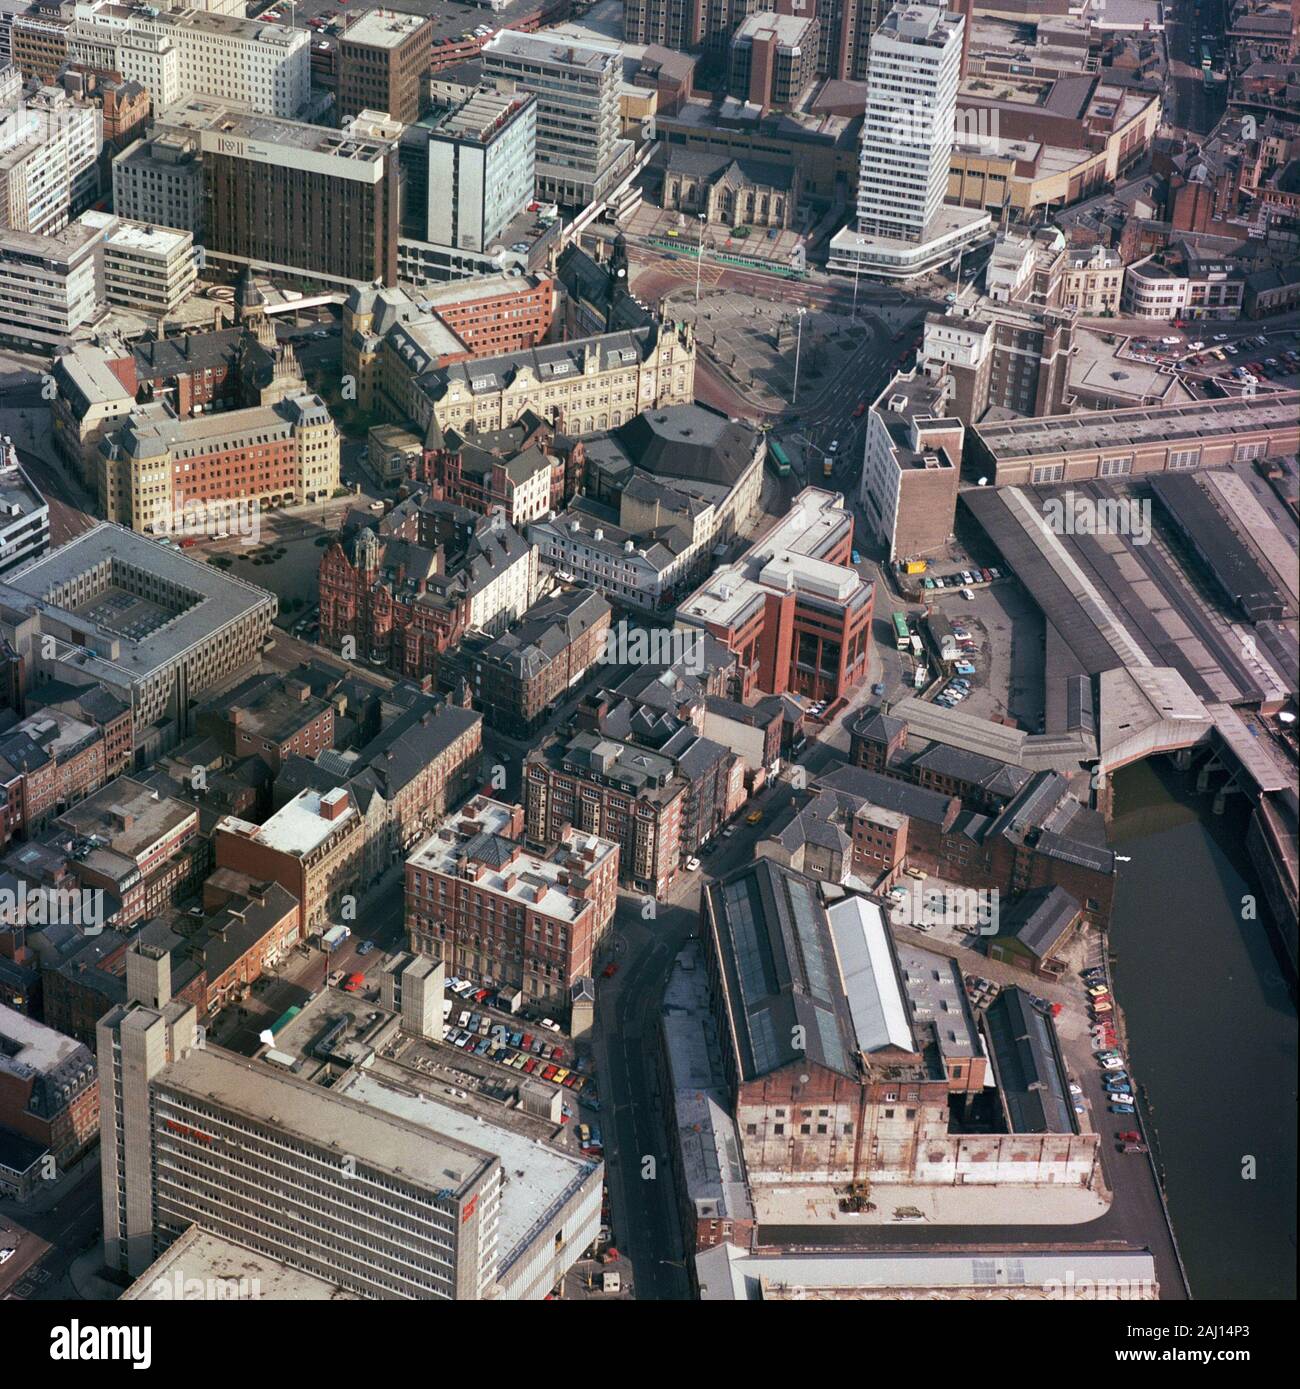 1986 Leeds centro città, dall'aria, West Yorkshire, Inghilterra del Nord, Regno Unito, fotografia aerea storica Foto Stock